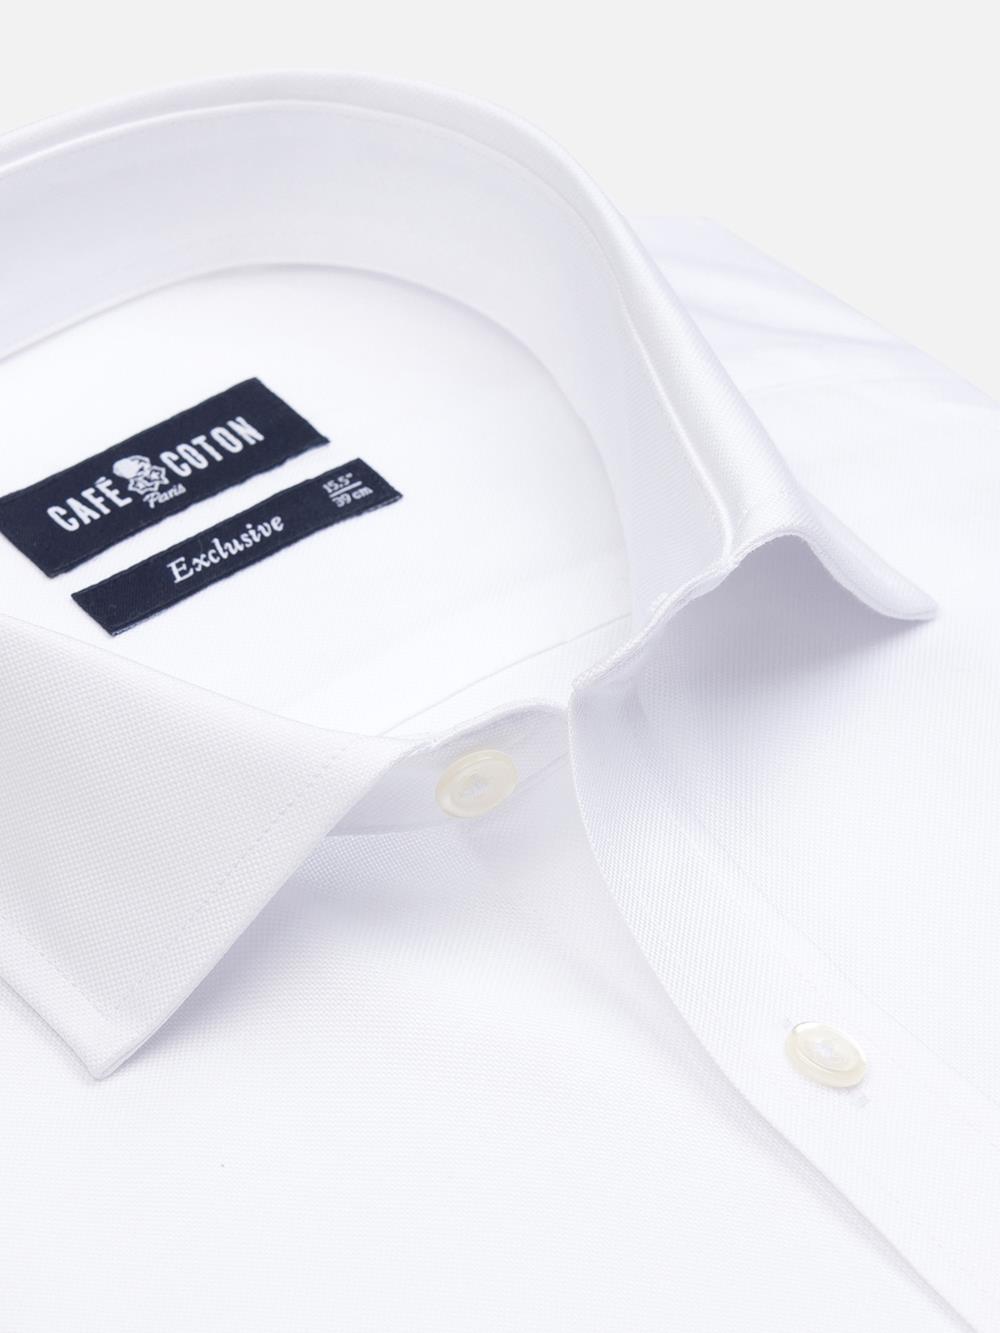 Camicia slim fit oxford bianca - Doppi polsini